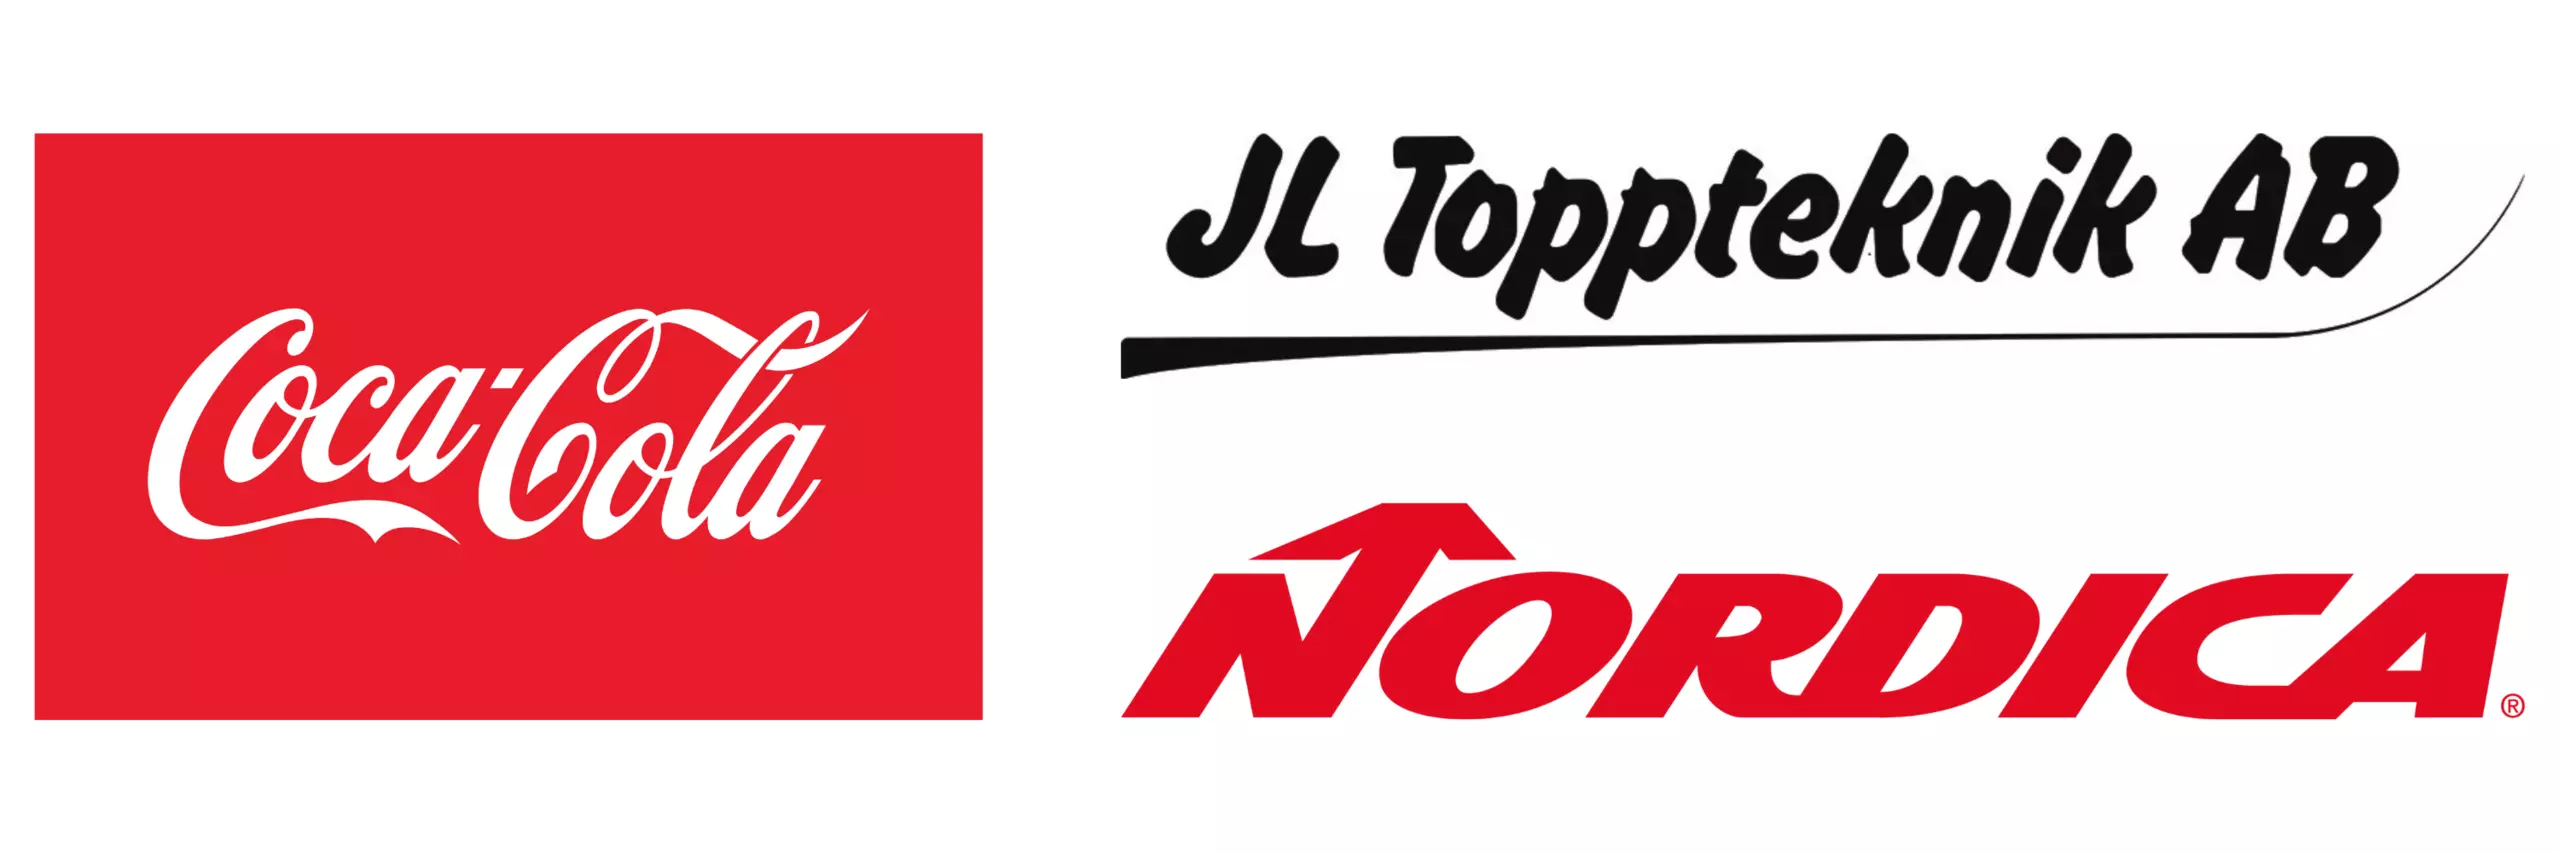 Logo til Coca Cola, JL Toppteknik AB og Nordica